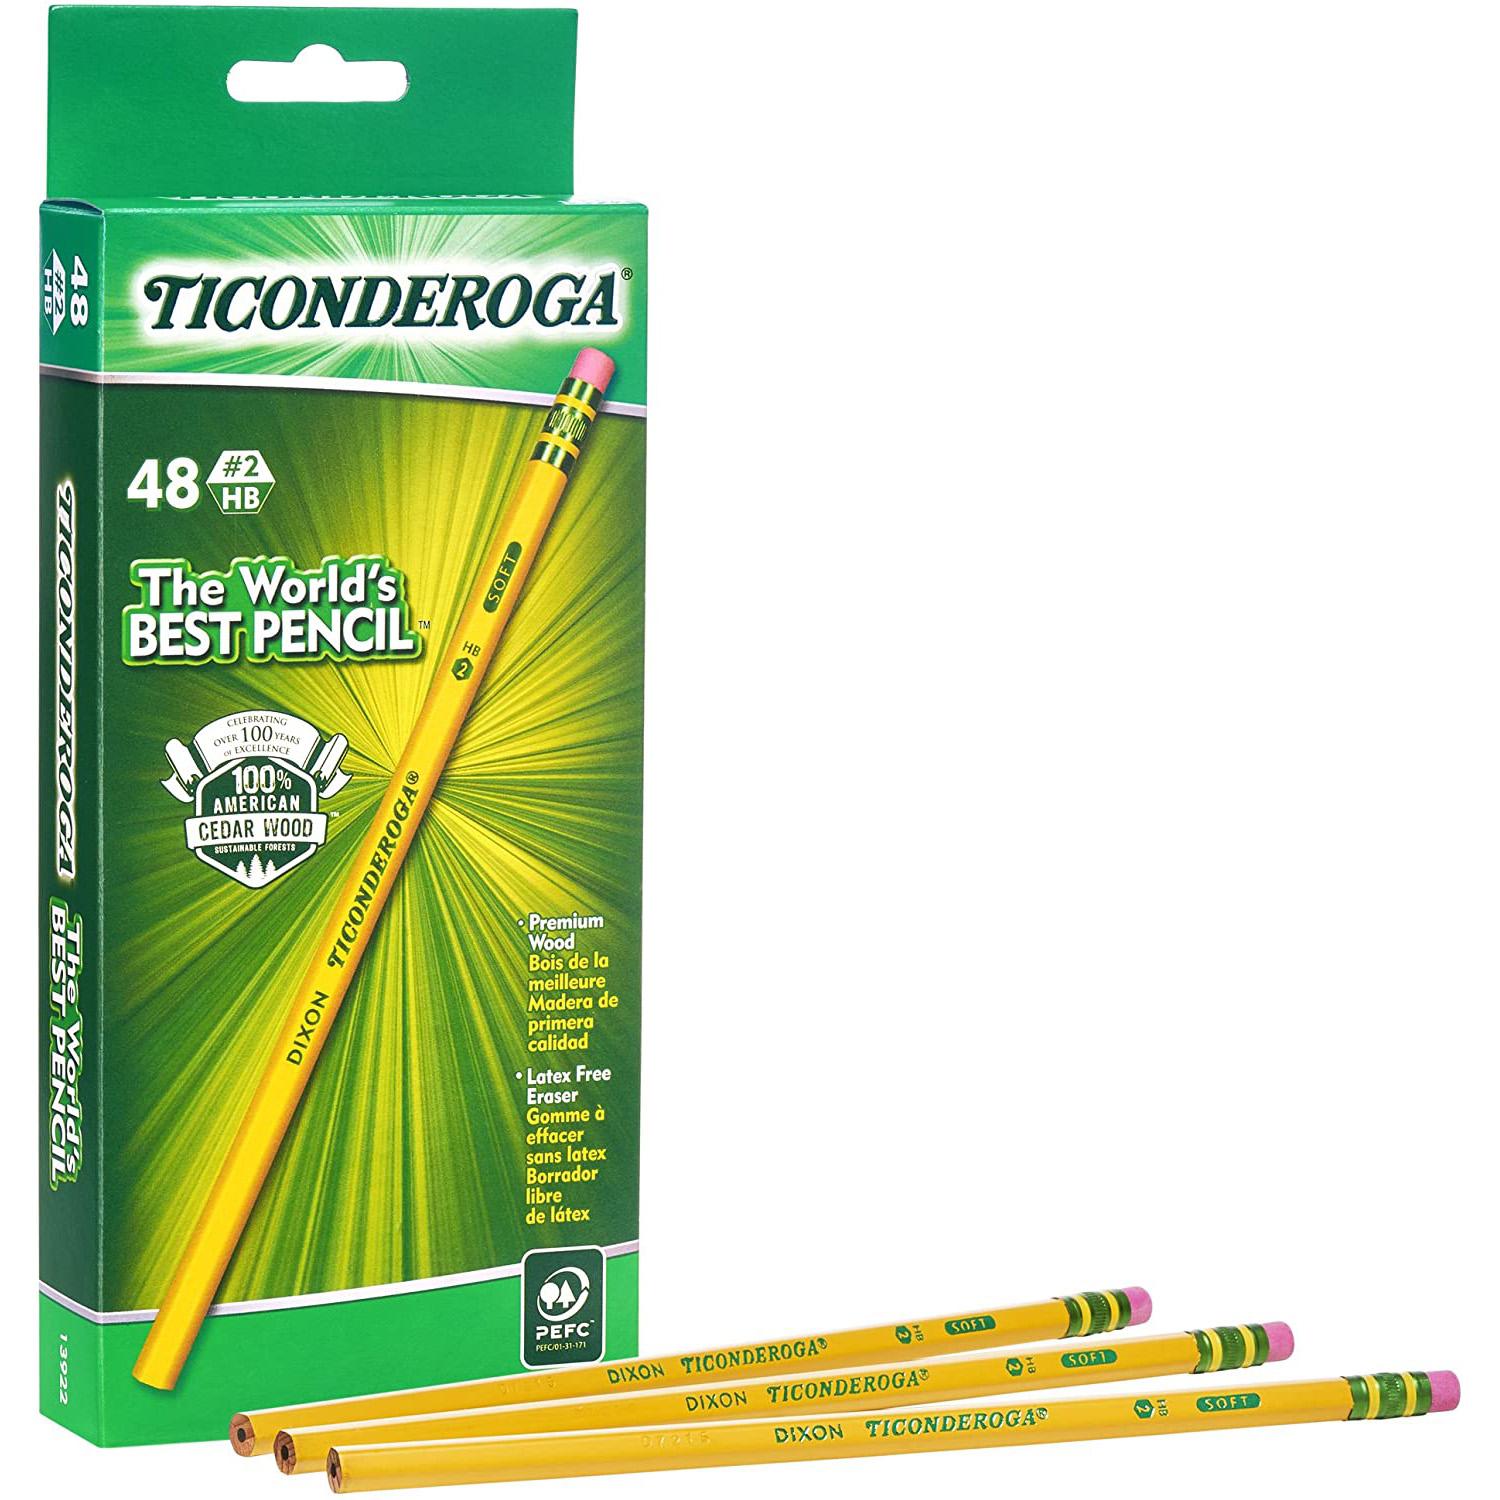 48 Ticonderoga Soft Graphite Pencils for $4.37 Shipped